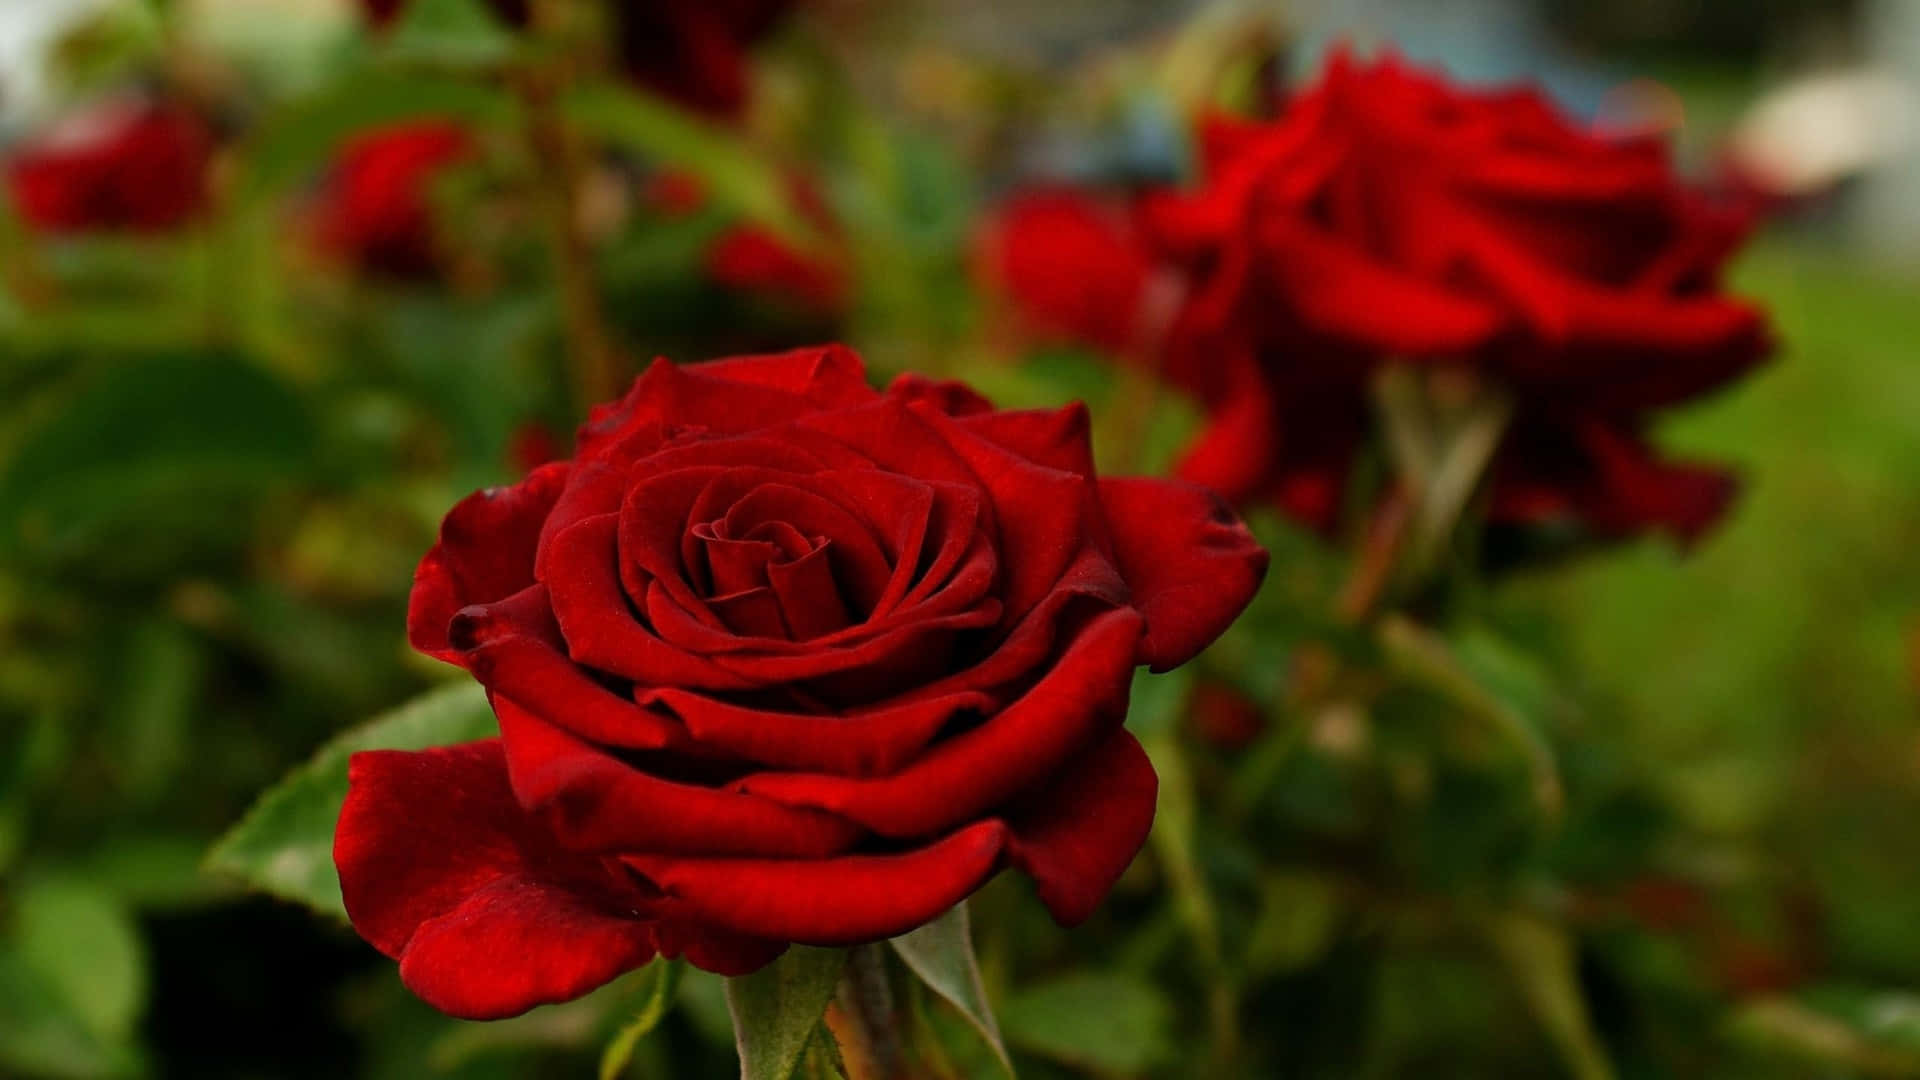 Rosesda Giardino Immagine Di Rose Rosse In Primo Piano.